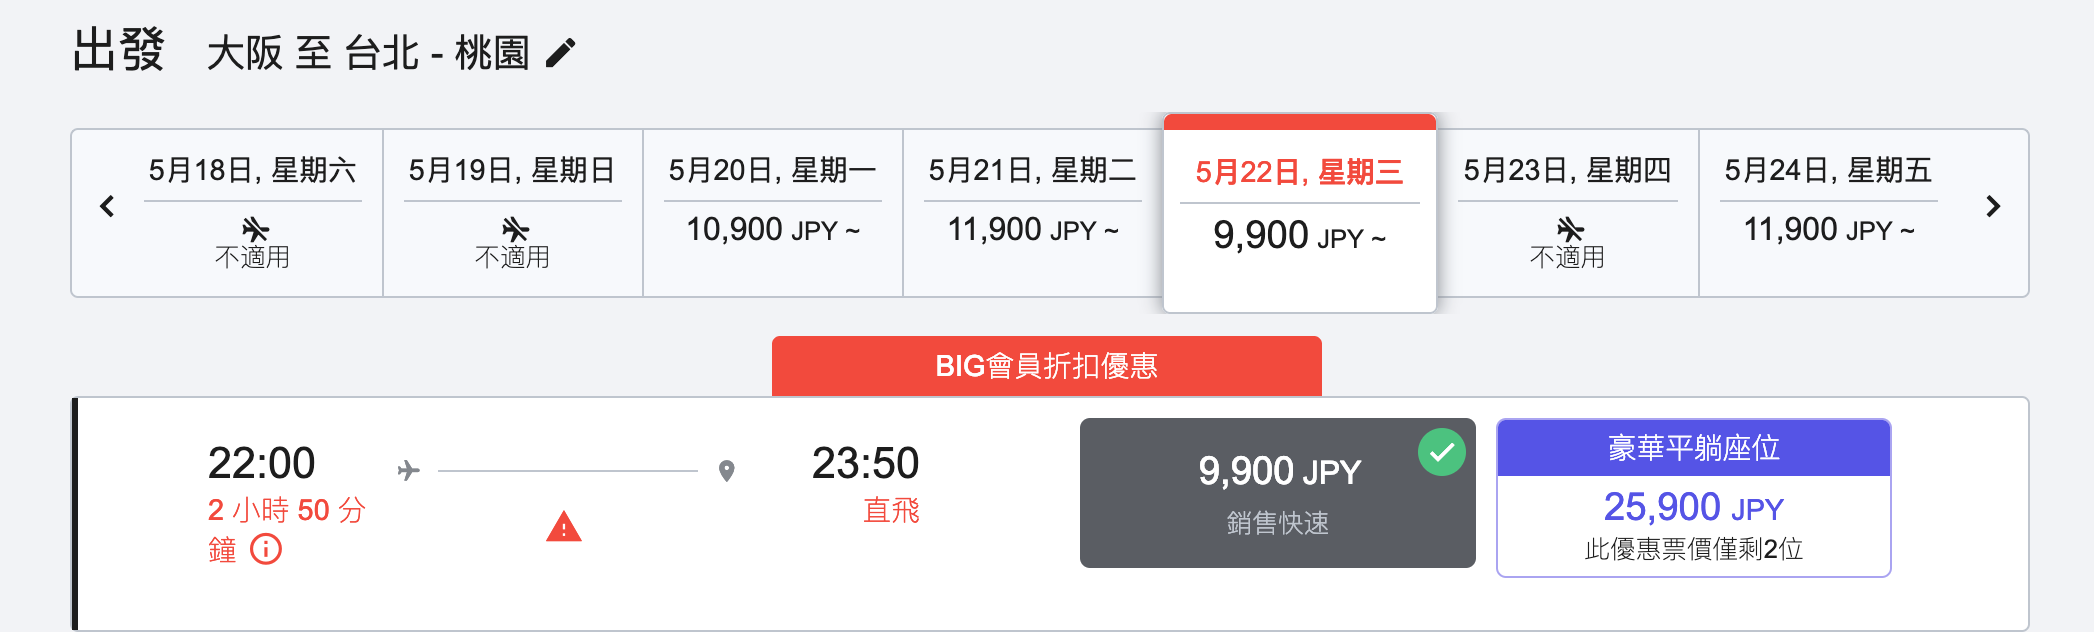 亞洲航空特價！善用促銷組合航線價格名古屋-大阪組合，你也可以走跳大日本～小撇步教你更便宜的方法（查票：108.2.26）